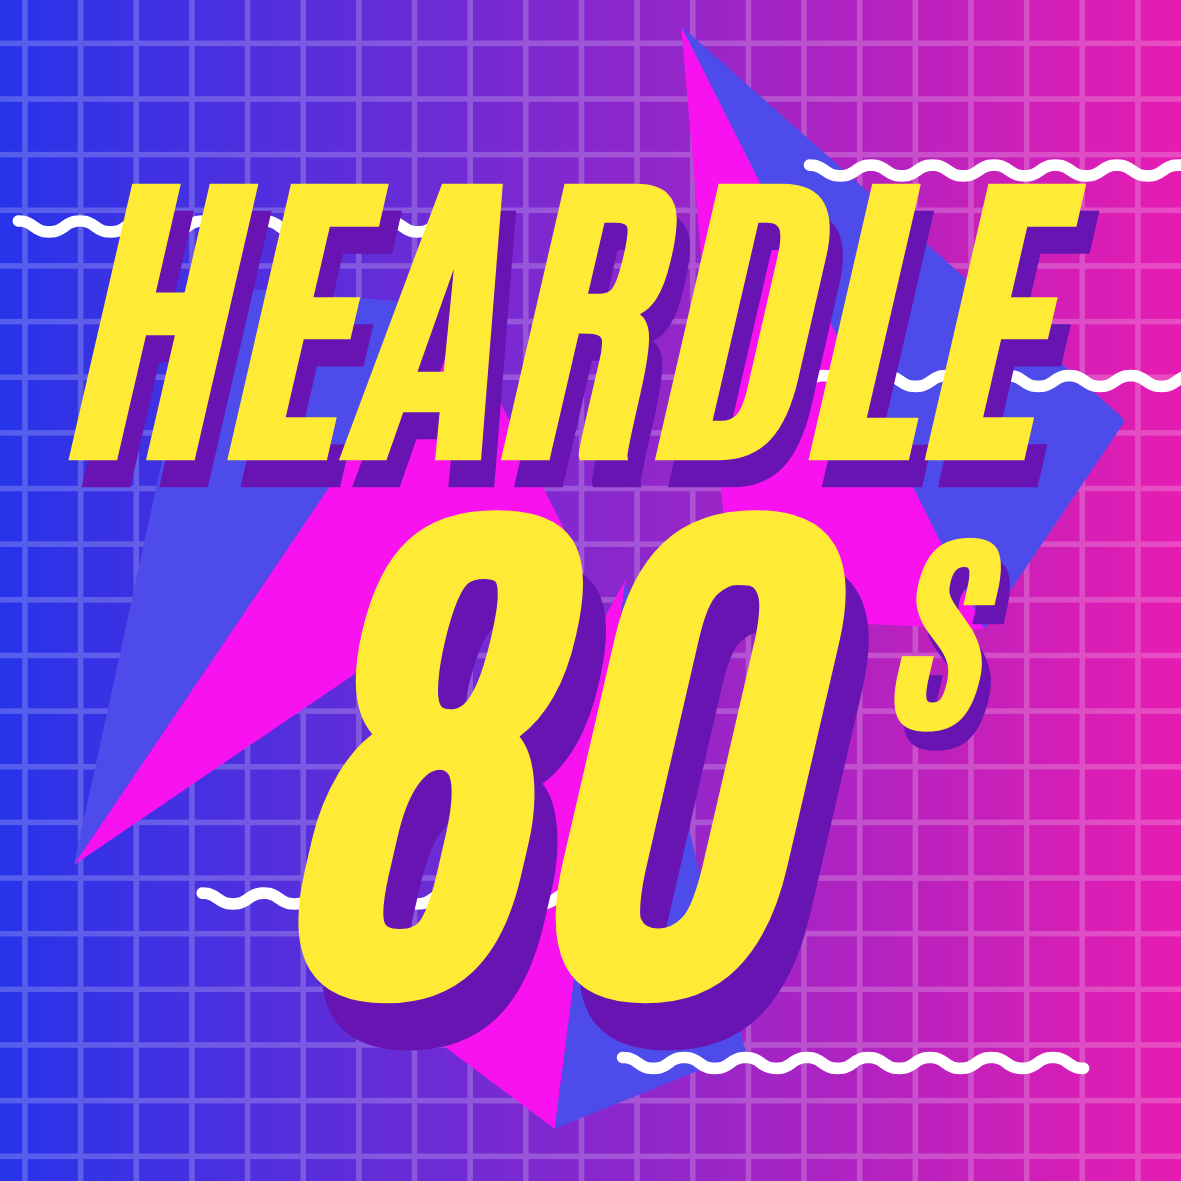 heardle80s.com